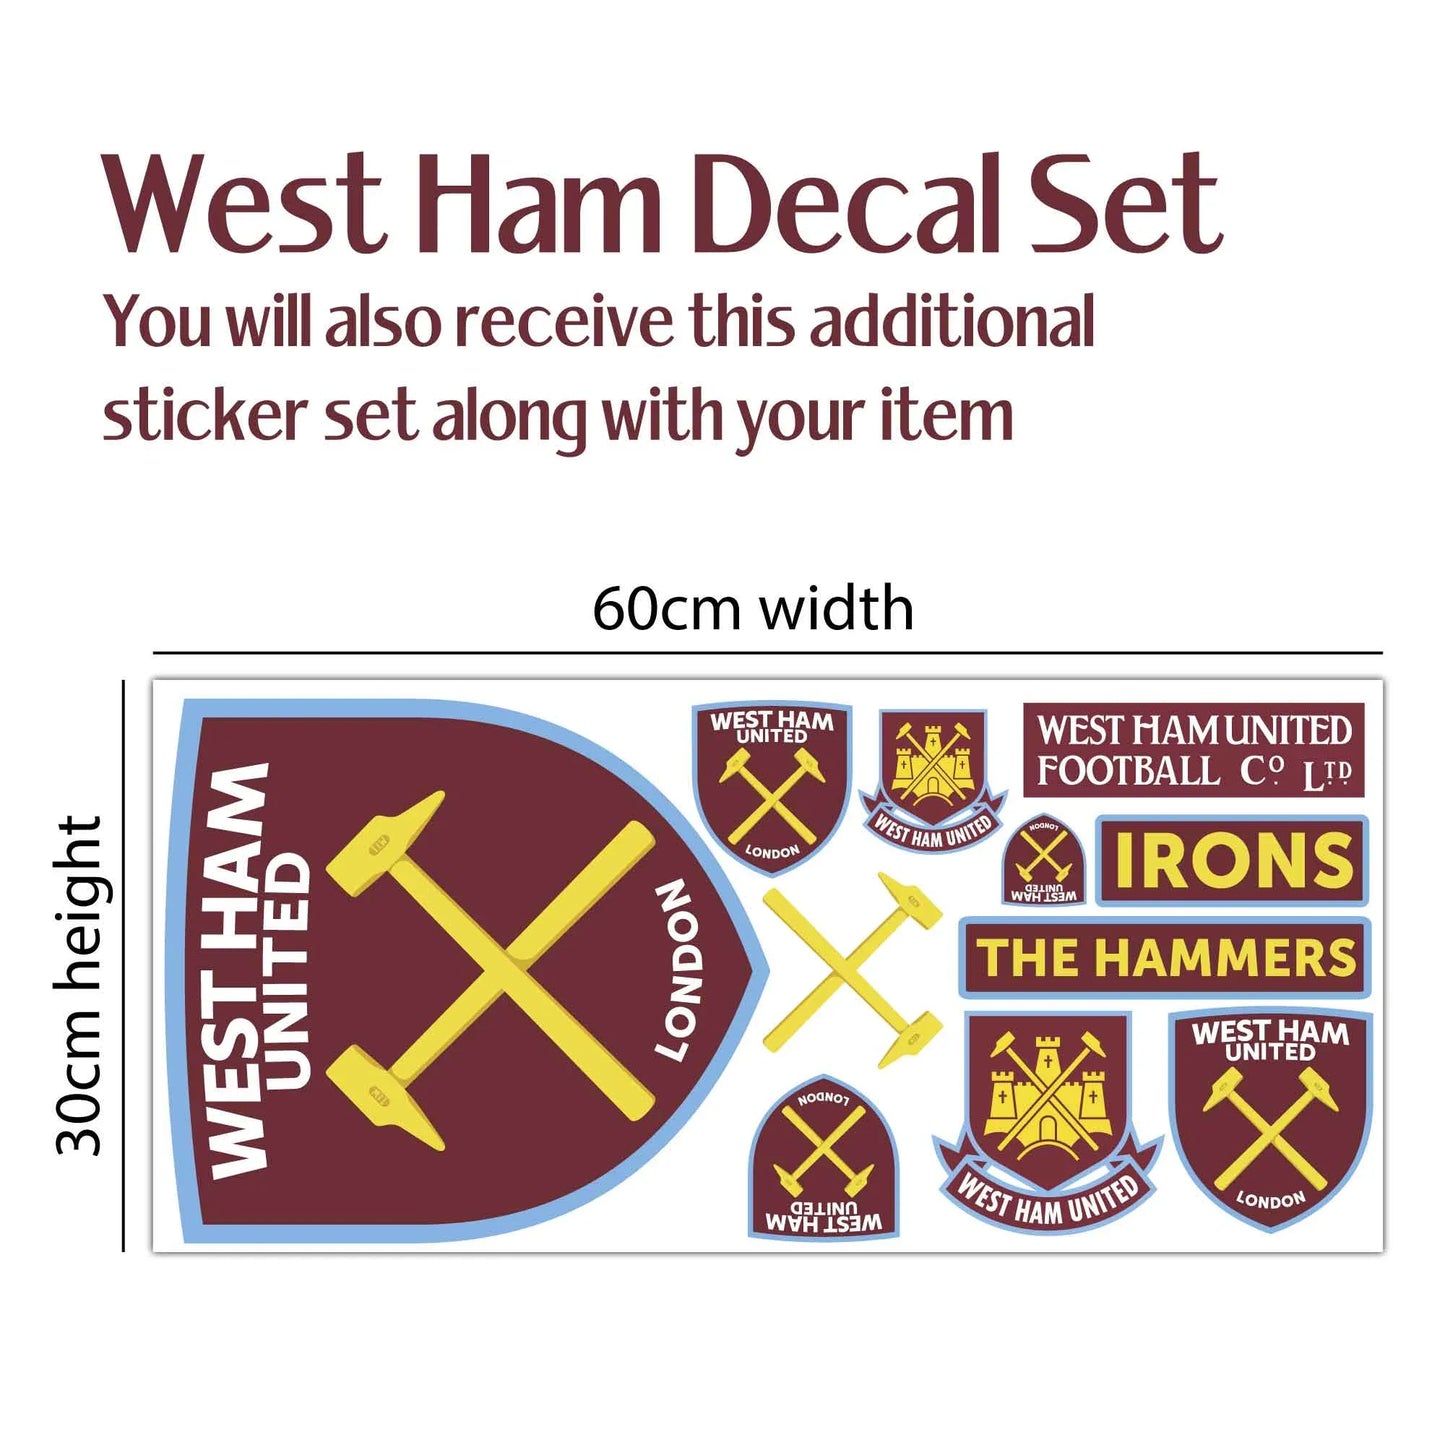 West Ham United Wall Sticker - Bowen 23/24 Broken Wall Sticker + Hammers Decal Set Football Art